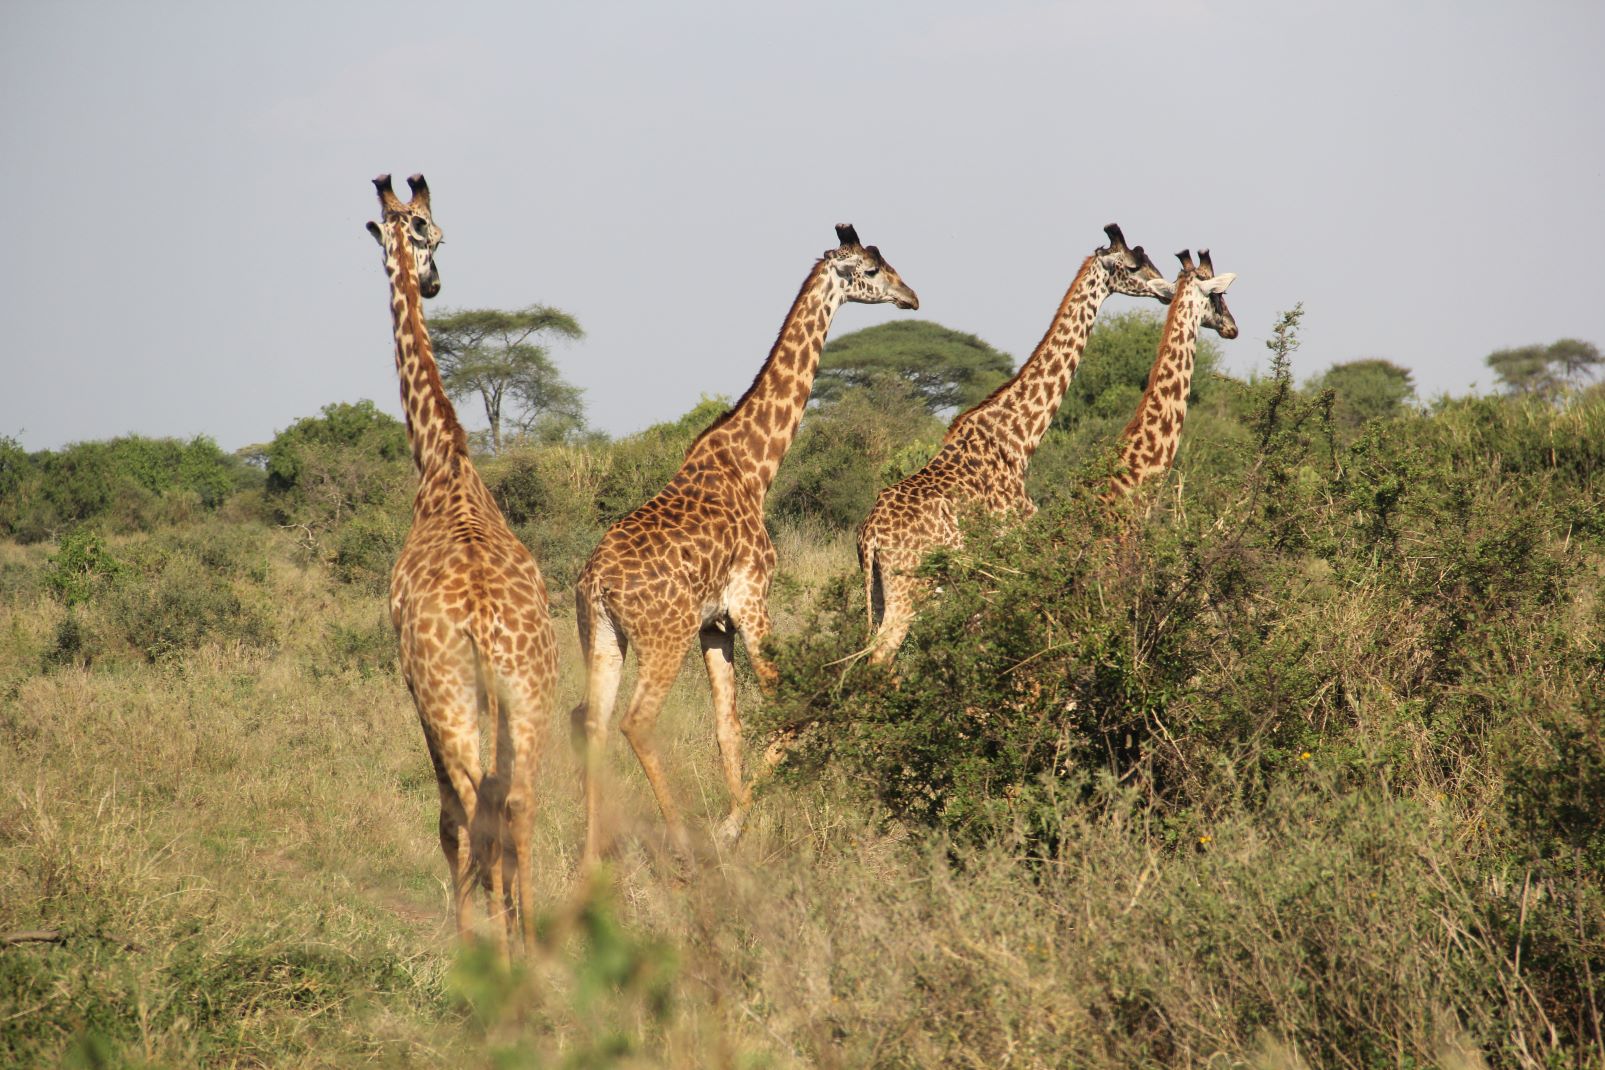 Serengeti fot. Jerzy Kostrzewa